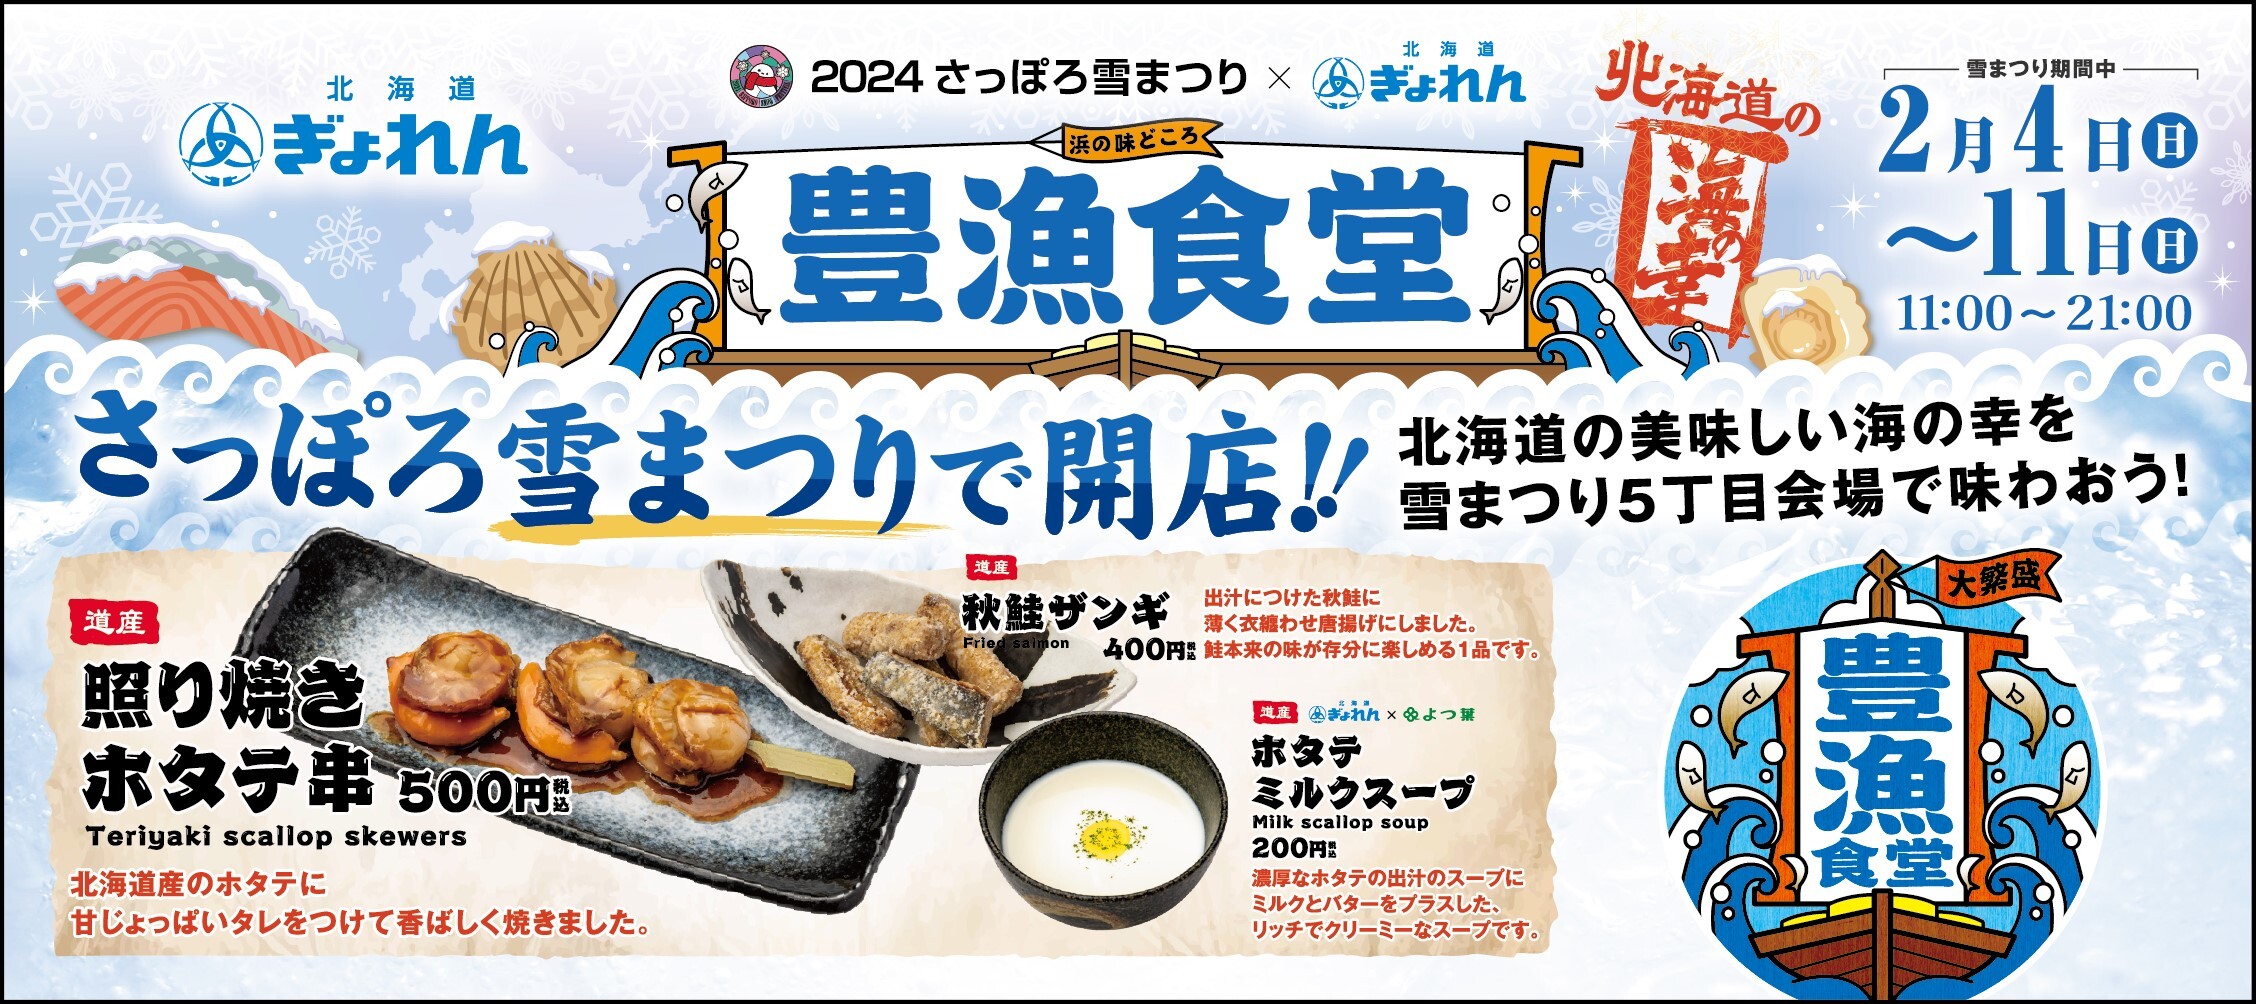 2月4日～11日「2024 さっぽろ雪まつり」にて
北海道の海の幸を堪能できる飲食ブース「豊漁食堂」を出展